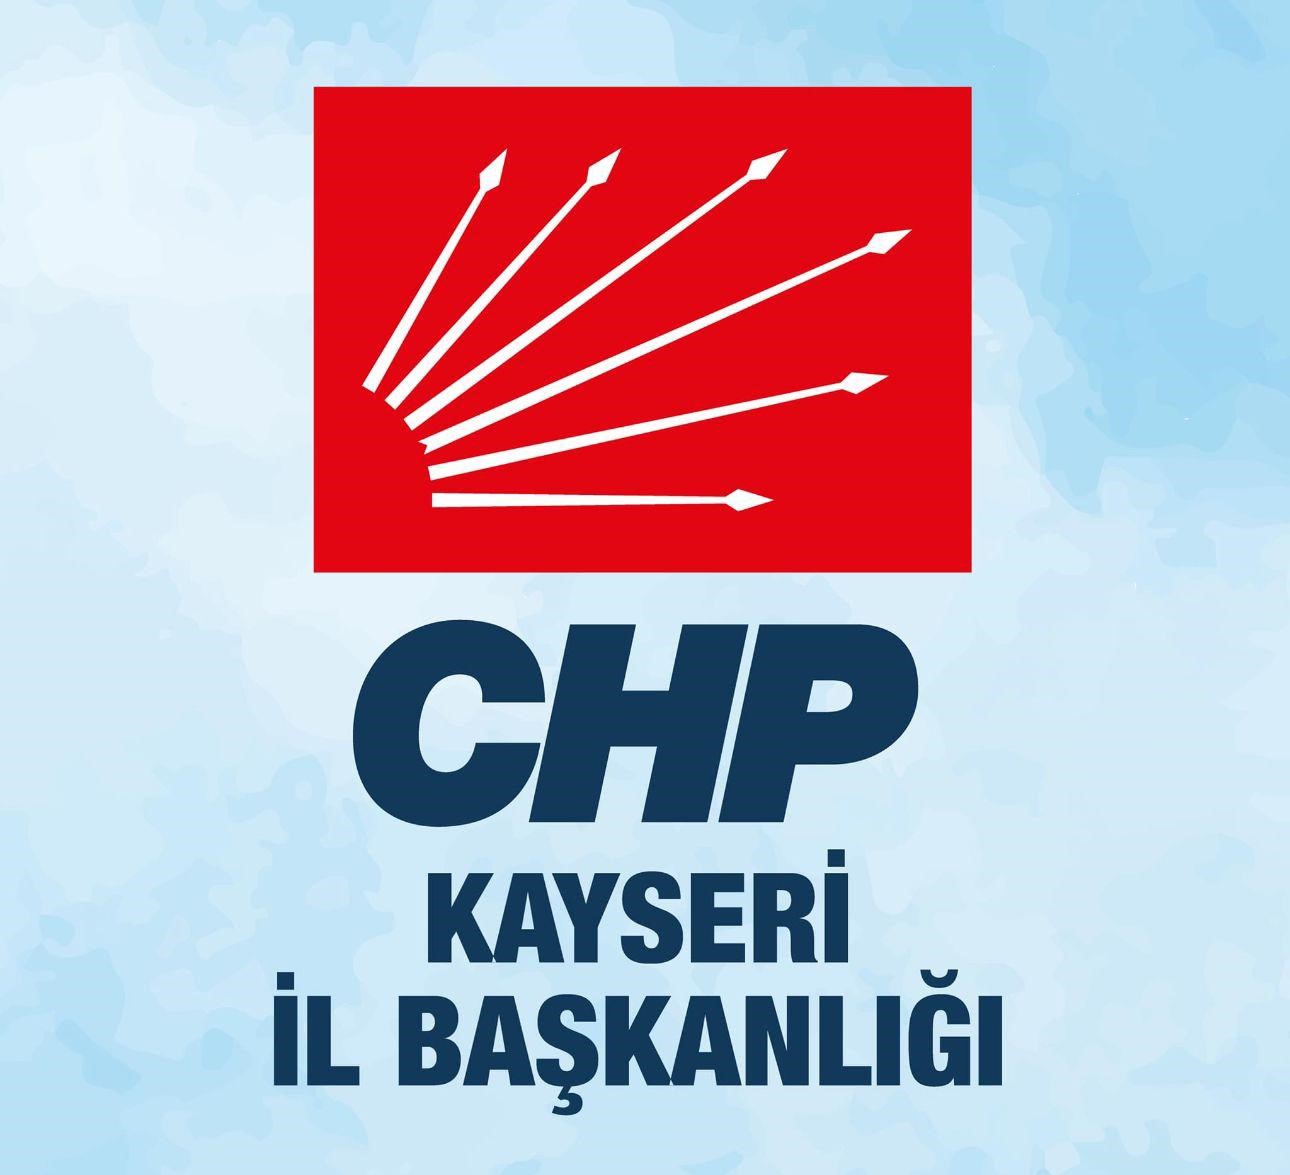 CHP Kayseri İl Başkanlığı’ndan Sağduyu Çağrısı